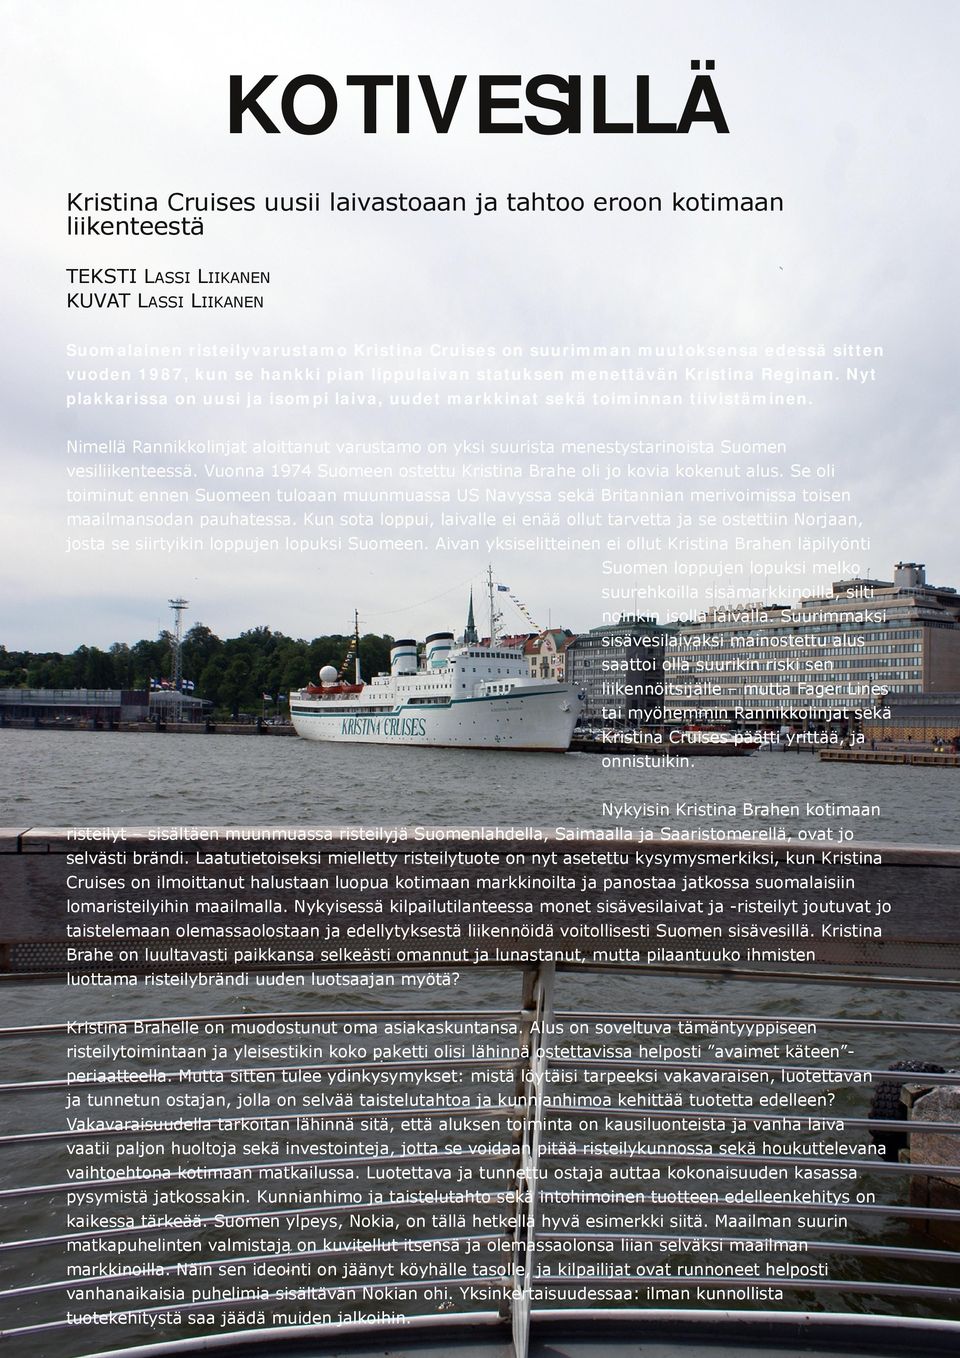 Nimellä Rannikkolinjat aloittanut varustamo on yksi suurista menestystarinoista Suomen vesiliikenteessä. Vuonna 1974 Suomeen ostettu Kristina Brahe oli jo kovia kokenut alus.